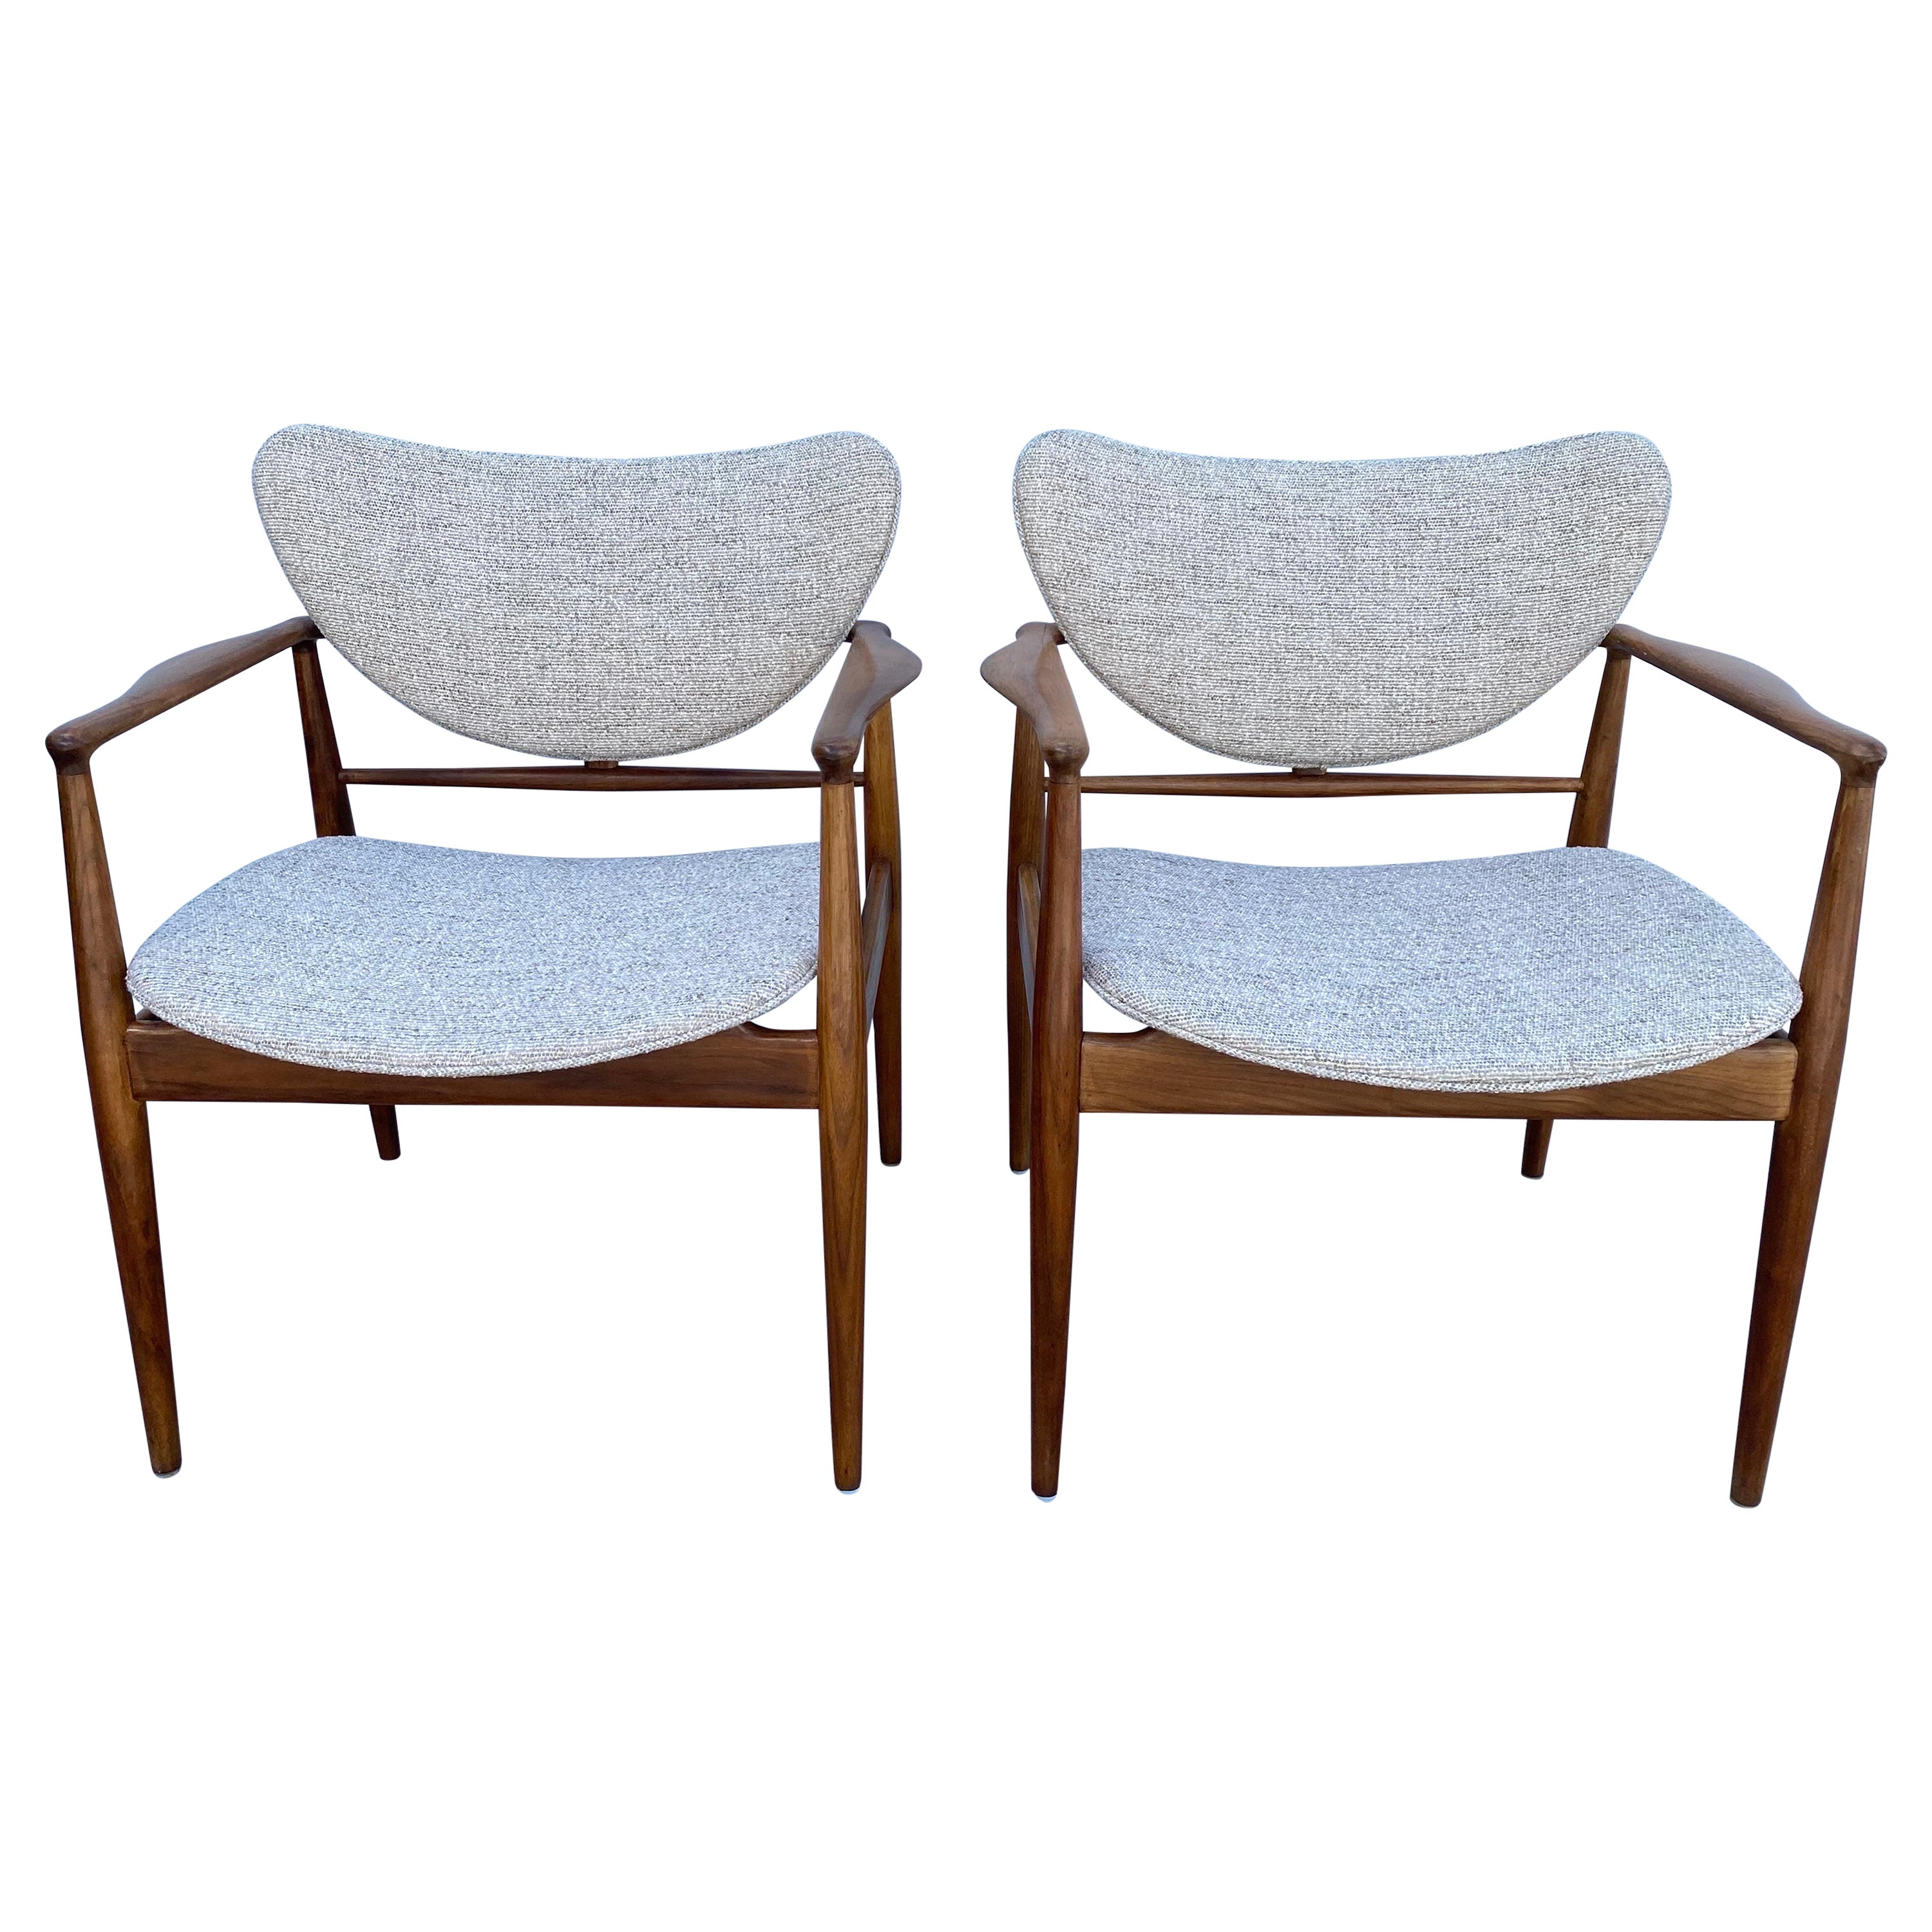 Pair of Finn Juhl No. 48 Danish Modern Chairs for Baker, 1950's